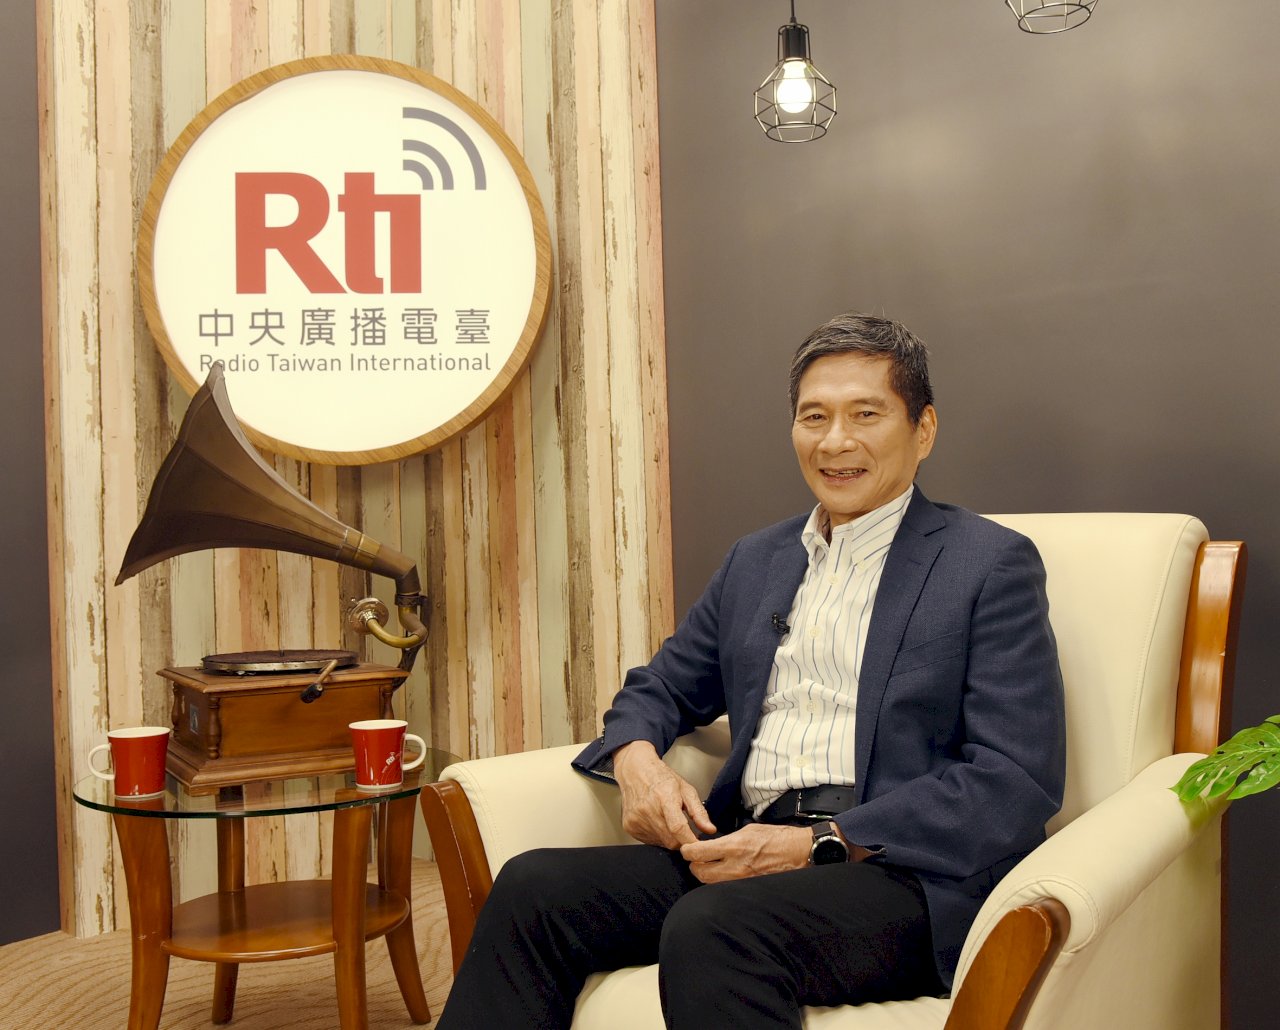 文化部長李永得接受央廣專訪，強調成立「國際英語影音平台」有其必要性，可向國際分享台灣價值。